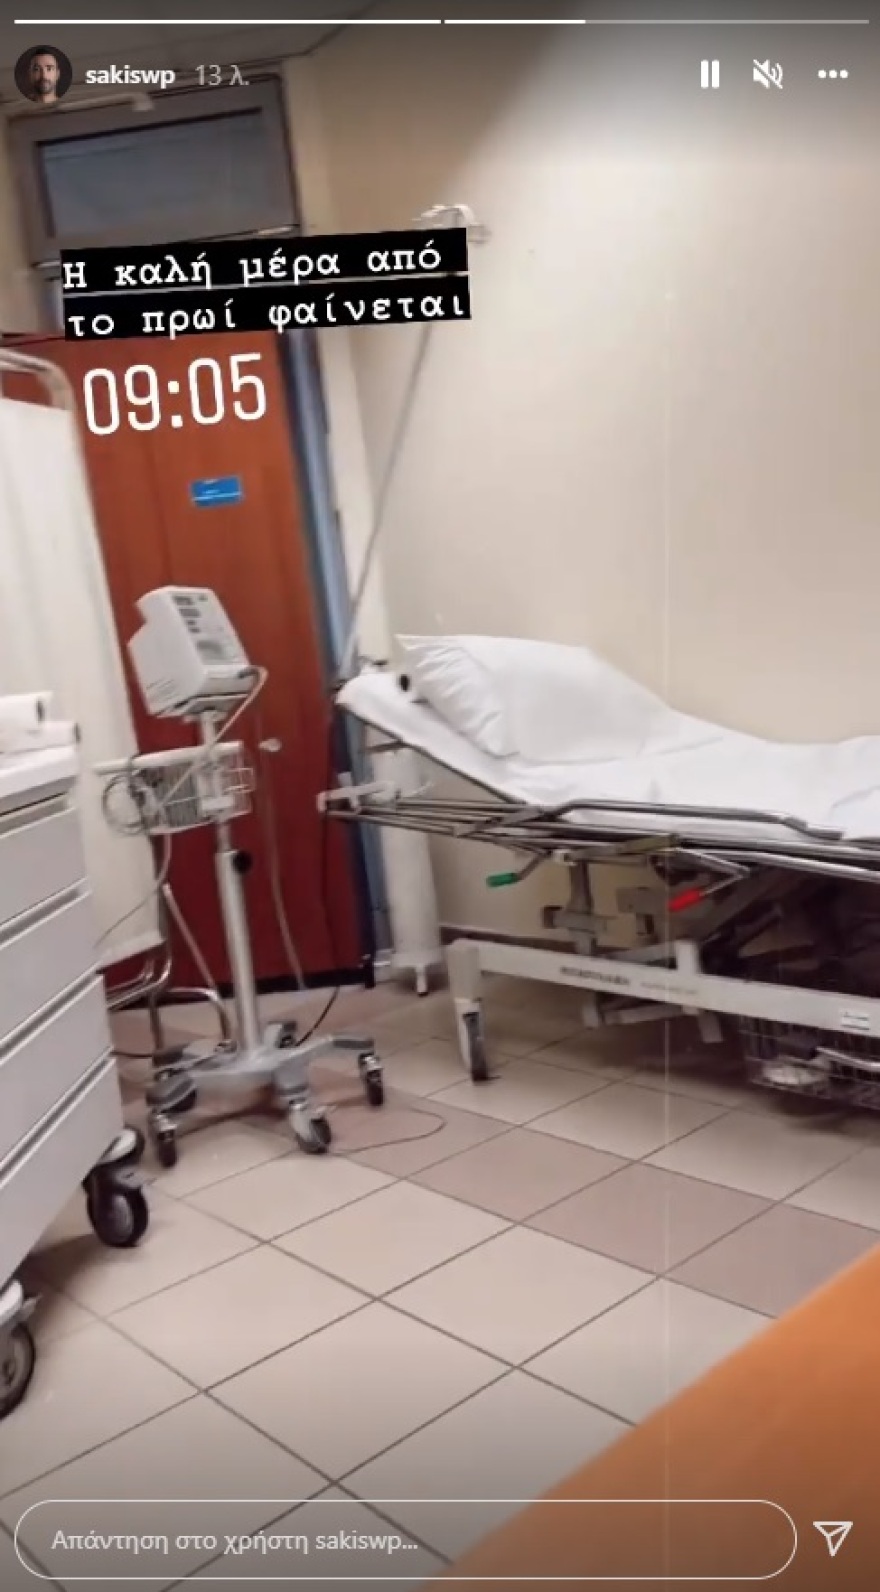 Τανιμανίδης, Στο νοσοκομείο ο Σάκης Τανιμανίδης